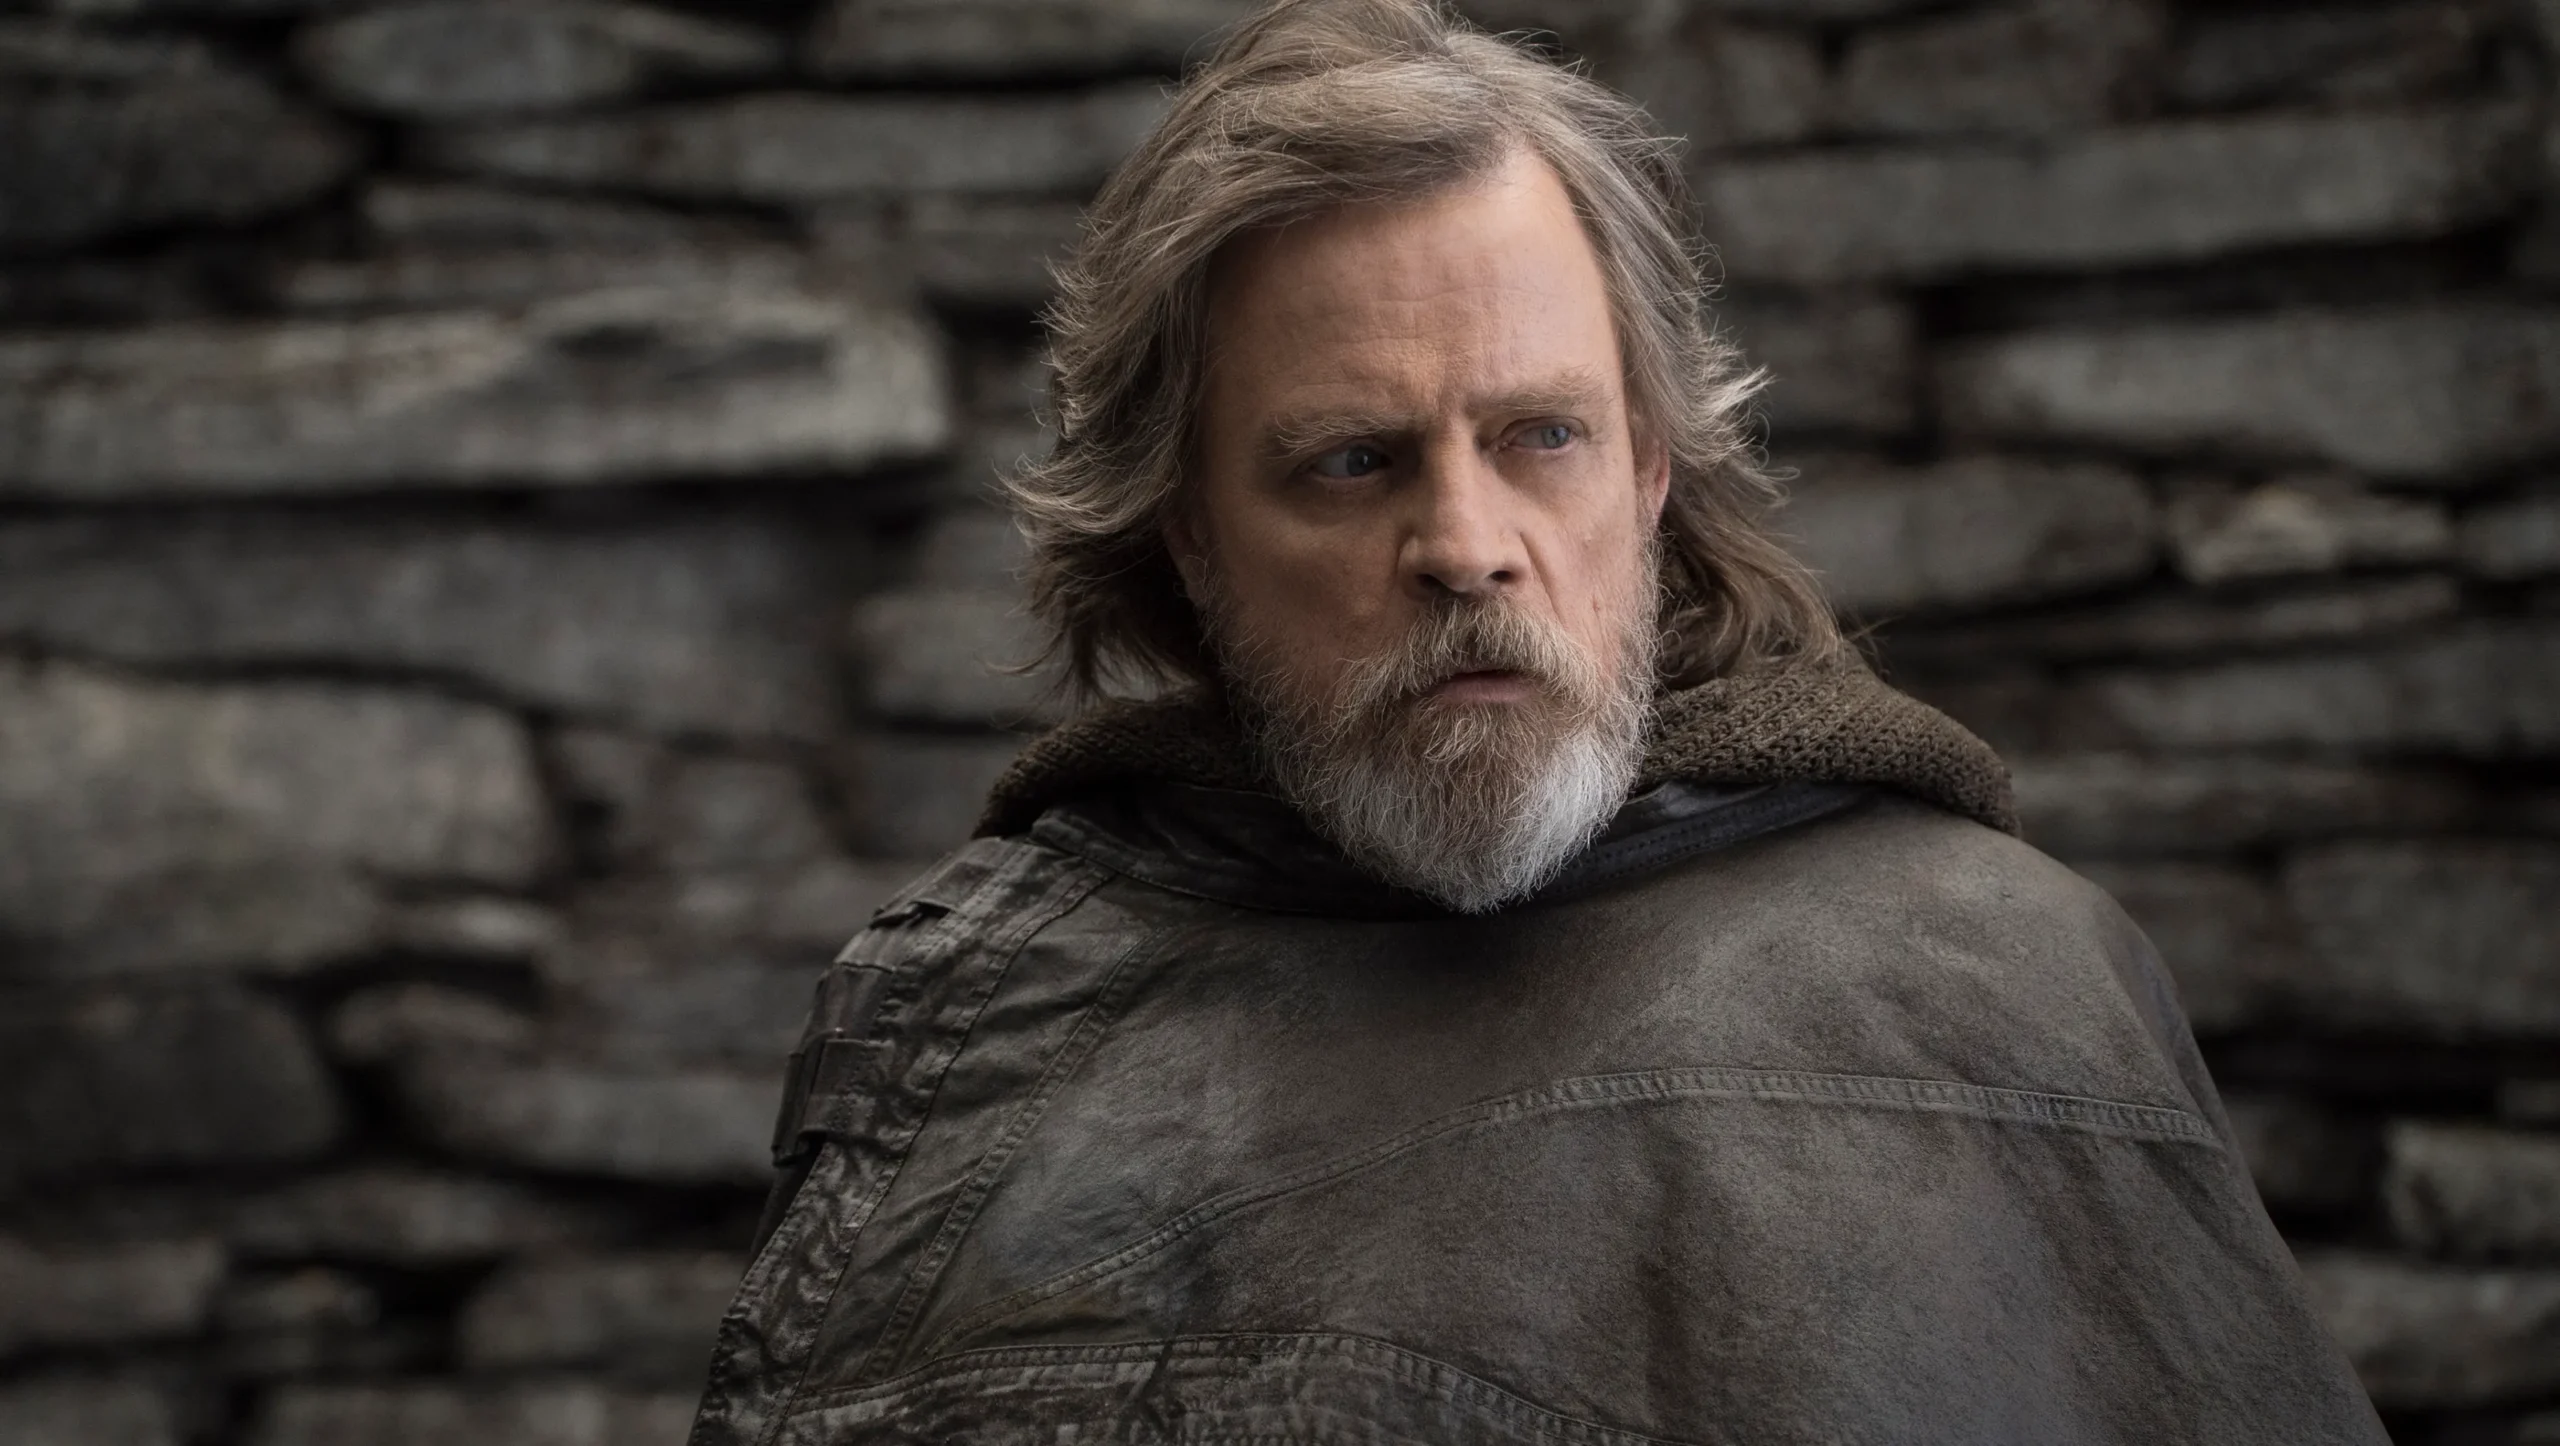 De acordo com a presidente da Lucasfilm, Luke Skywalker pode retornar no novo filme estrelando Rey.